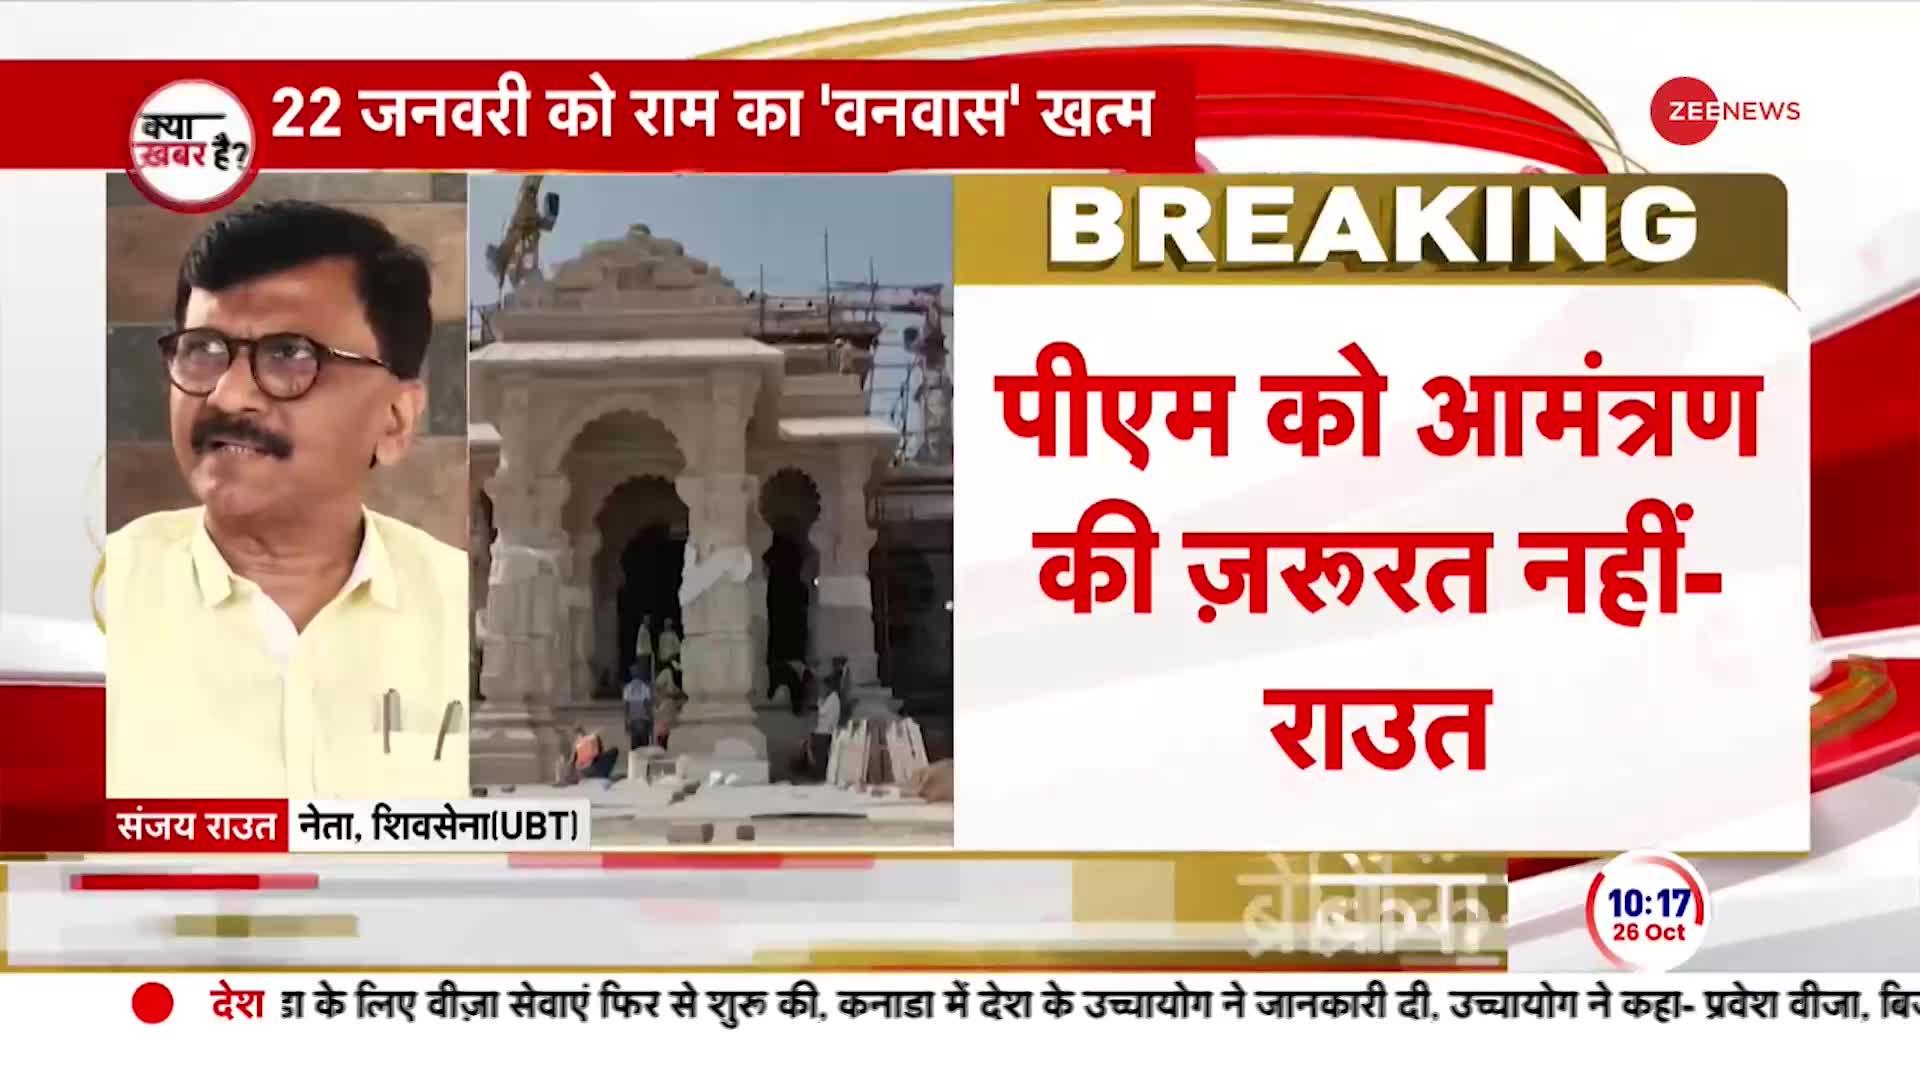 Sanjay Raut on PM Modi: 'राम मंदिर के लिए खून बहाया है..मोदी जी तो खुद जाएंगे'